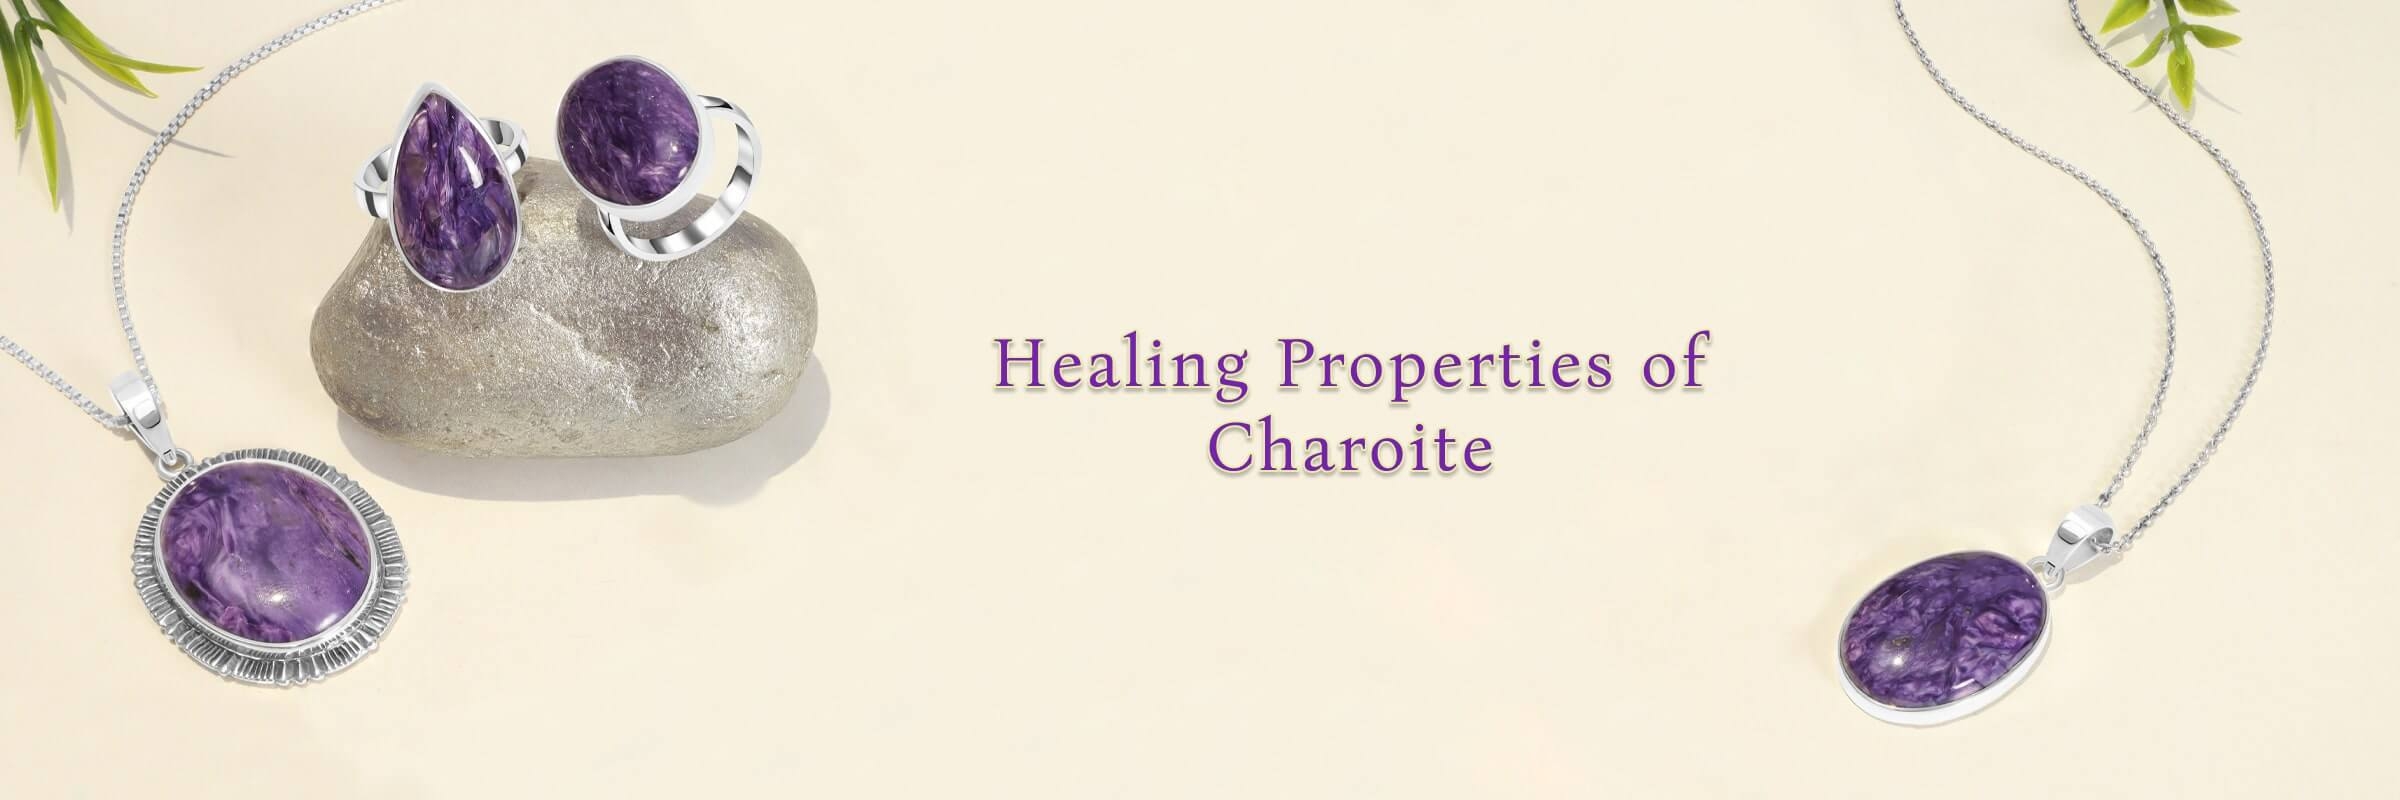 Charoite Healing Properties